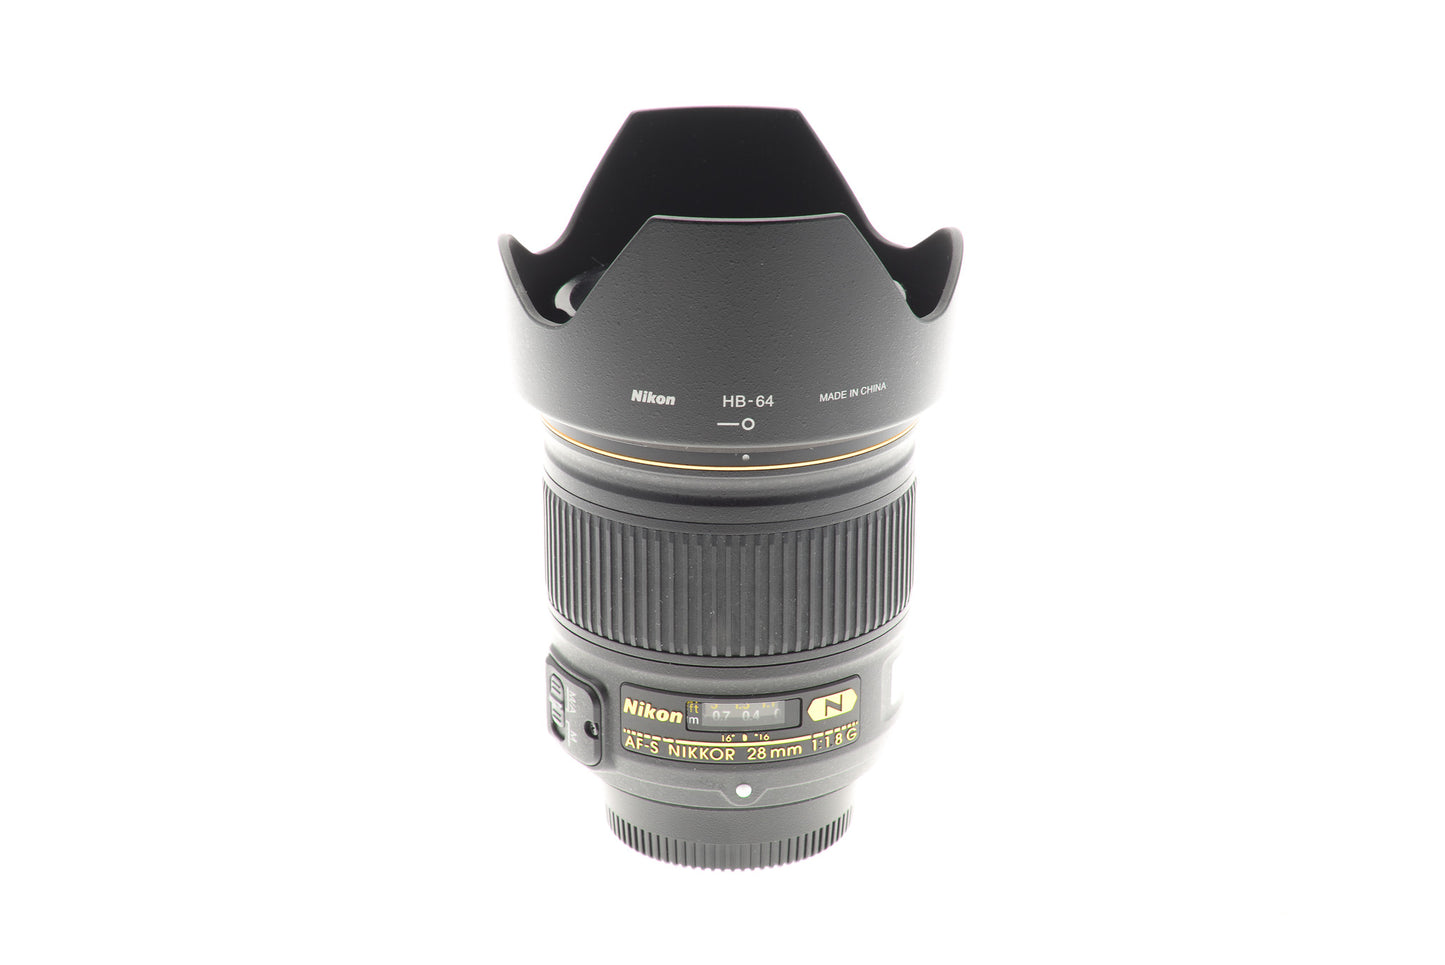 Nikon 28mm f1.8 G AF-S Nikkor - Lens